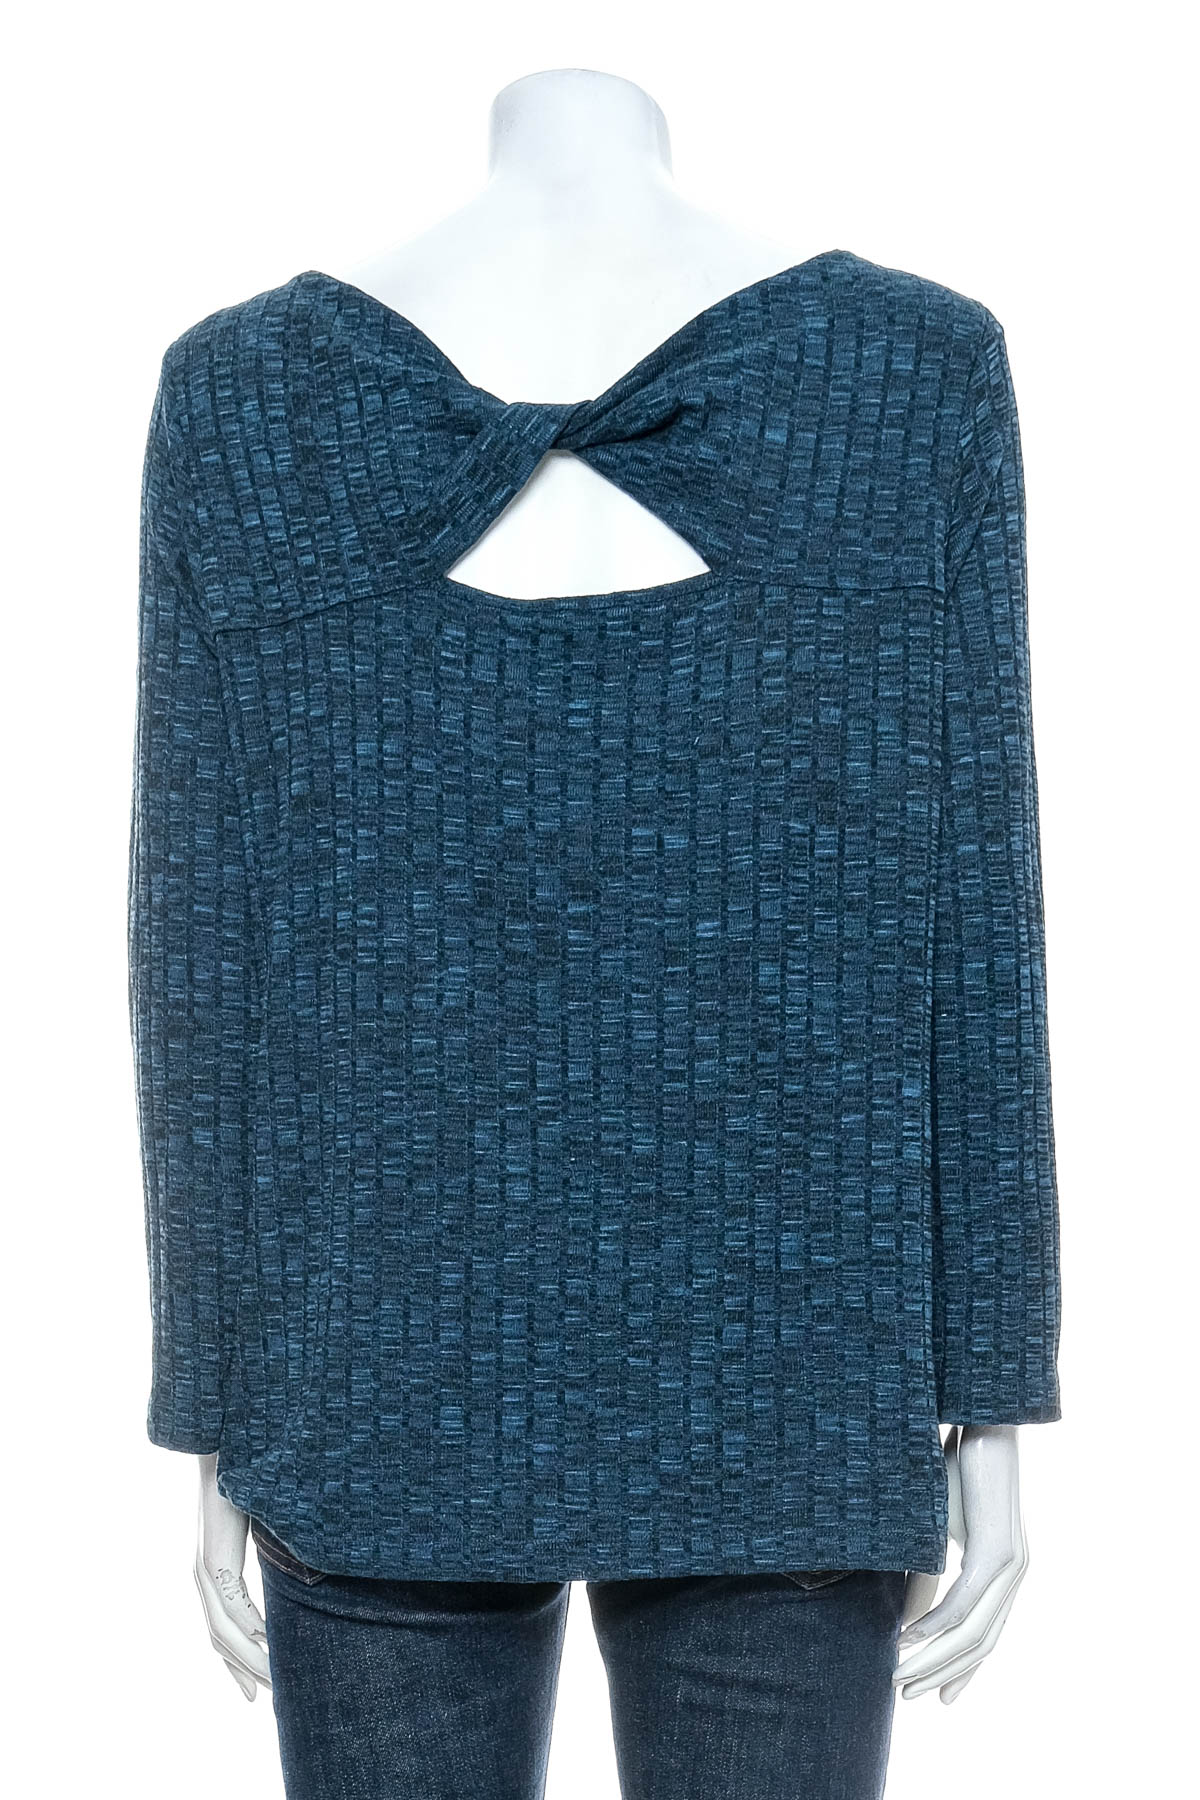 Women's sweater - Nine West - 1